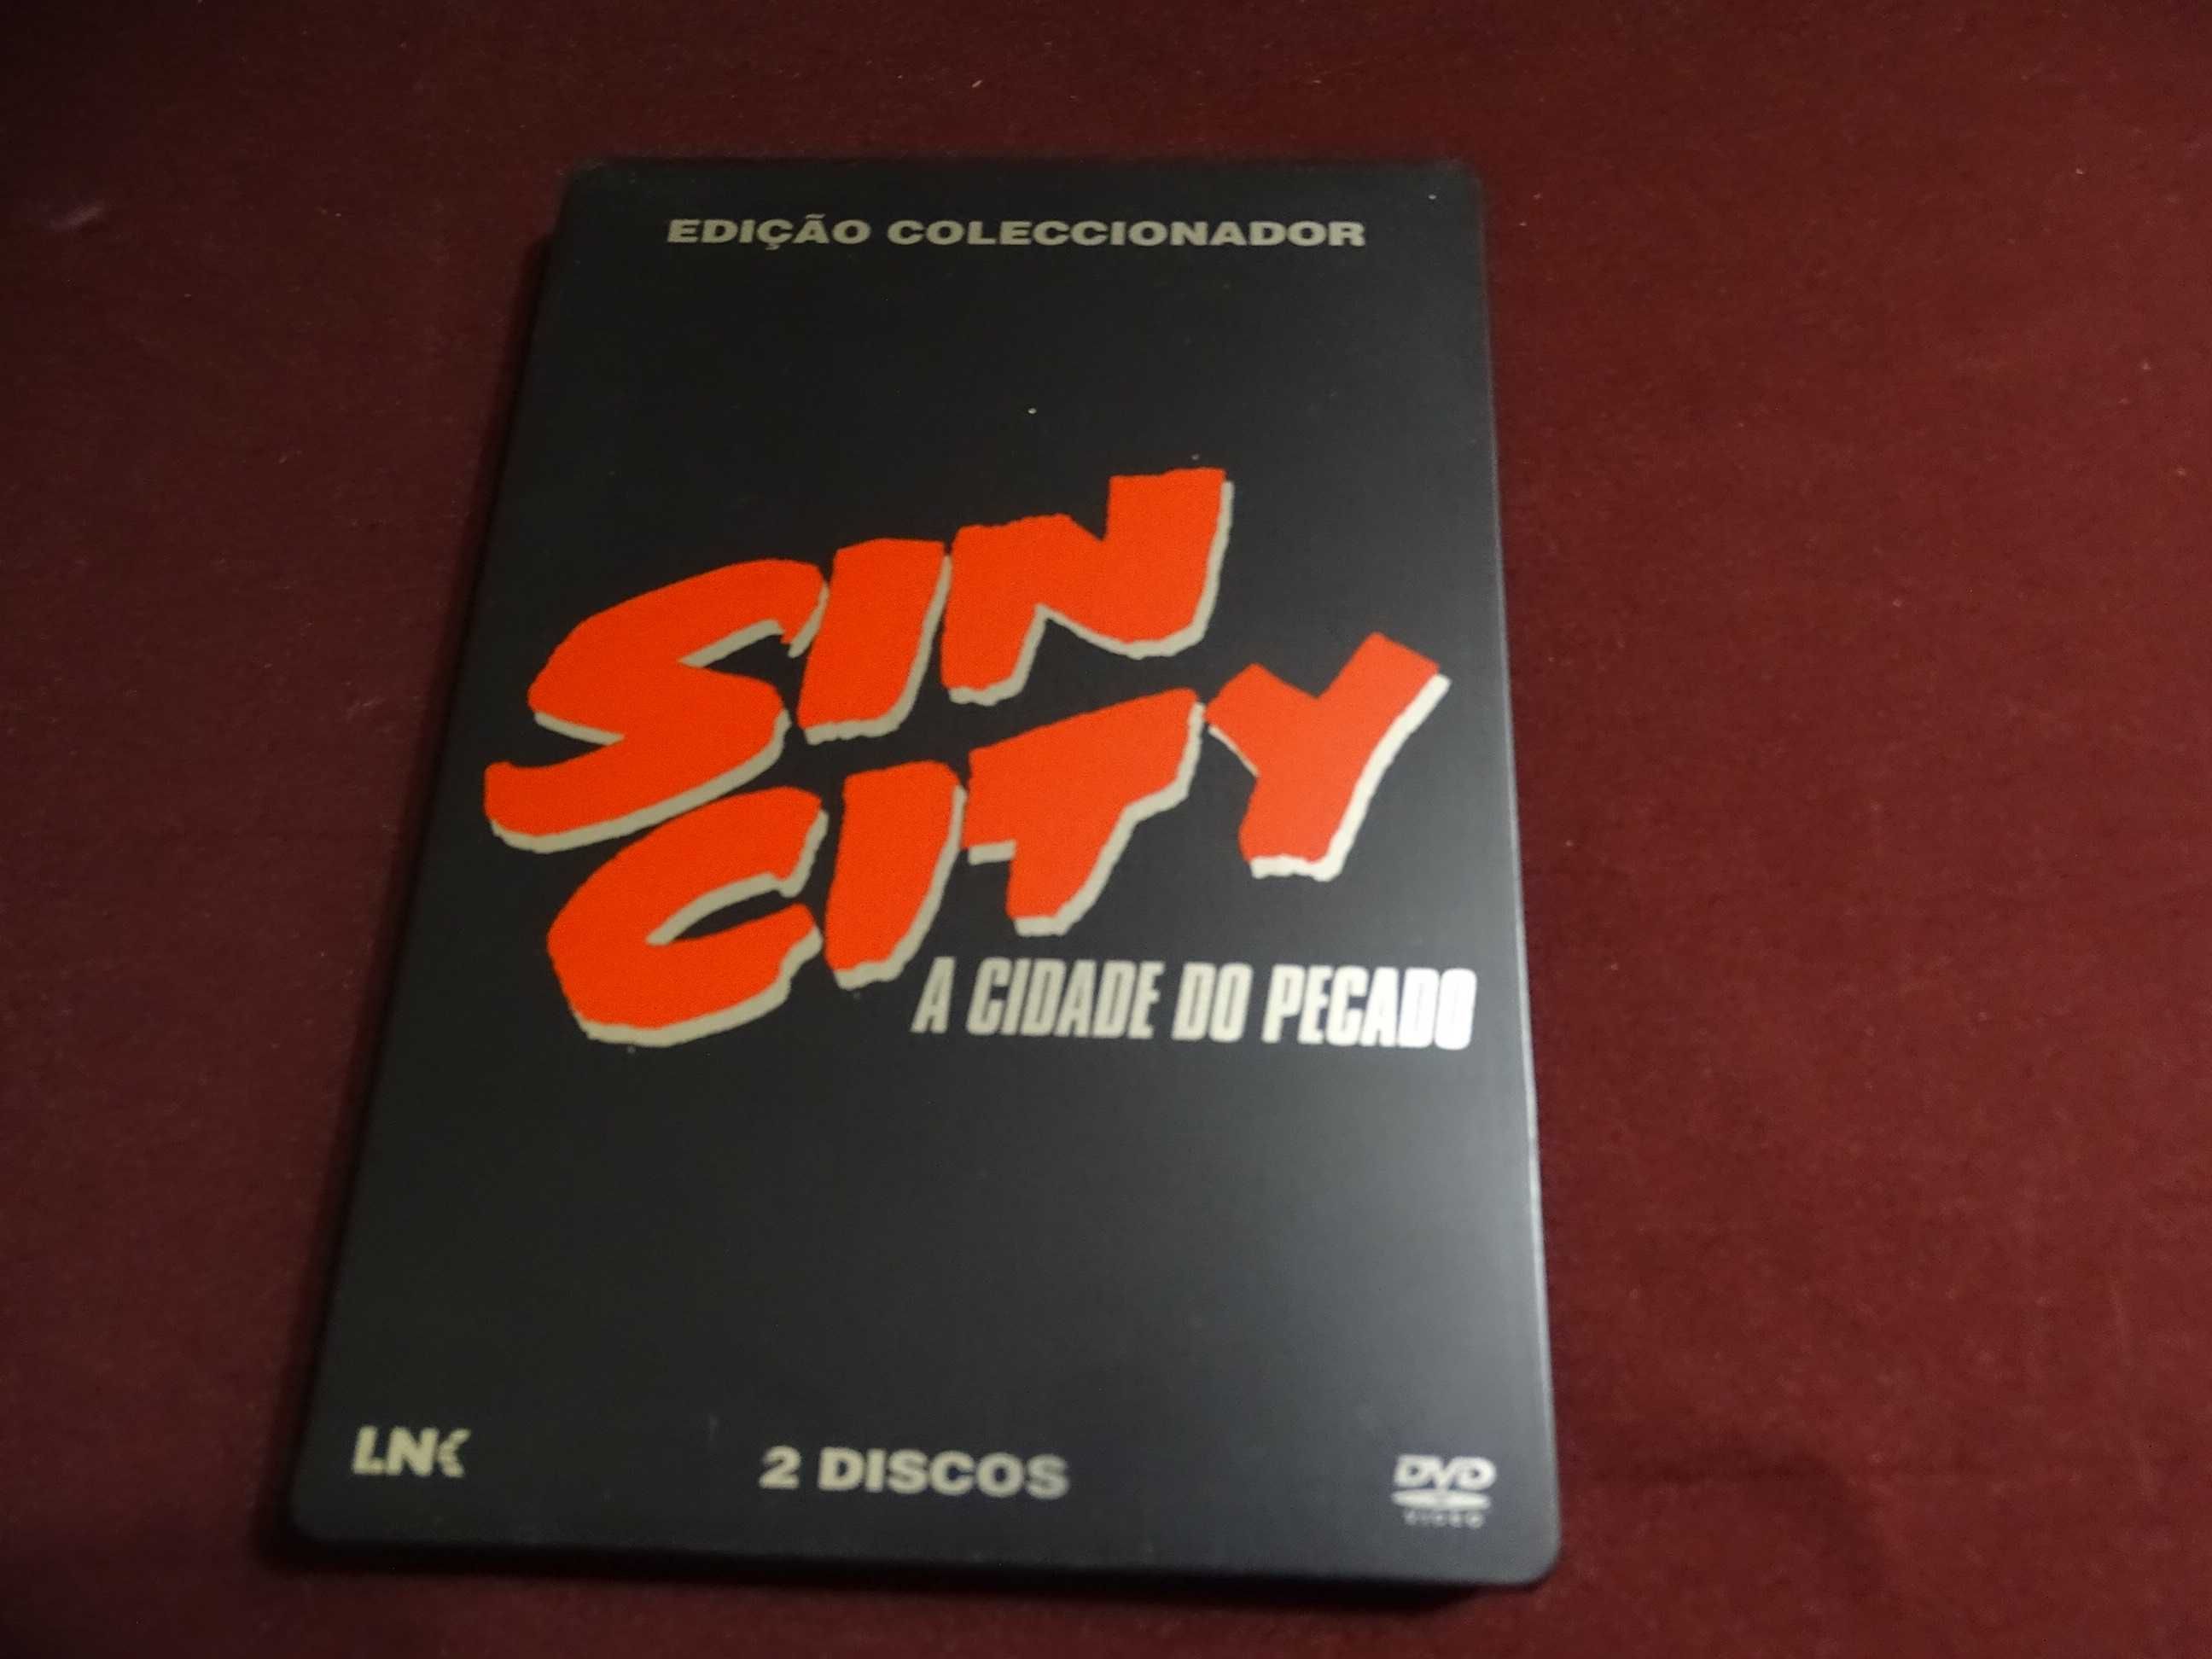 DVD-Sin City/A cidade do pecado/Robert Rodriguez-Caixa metálica